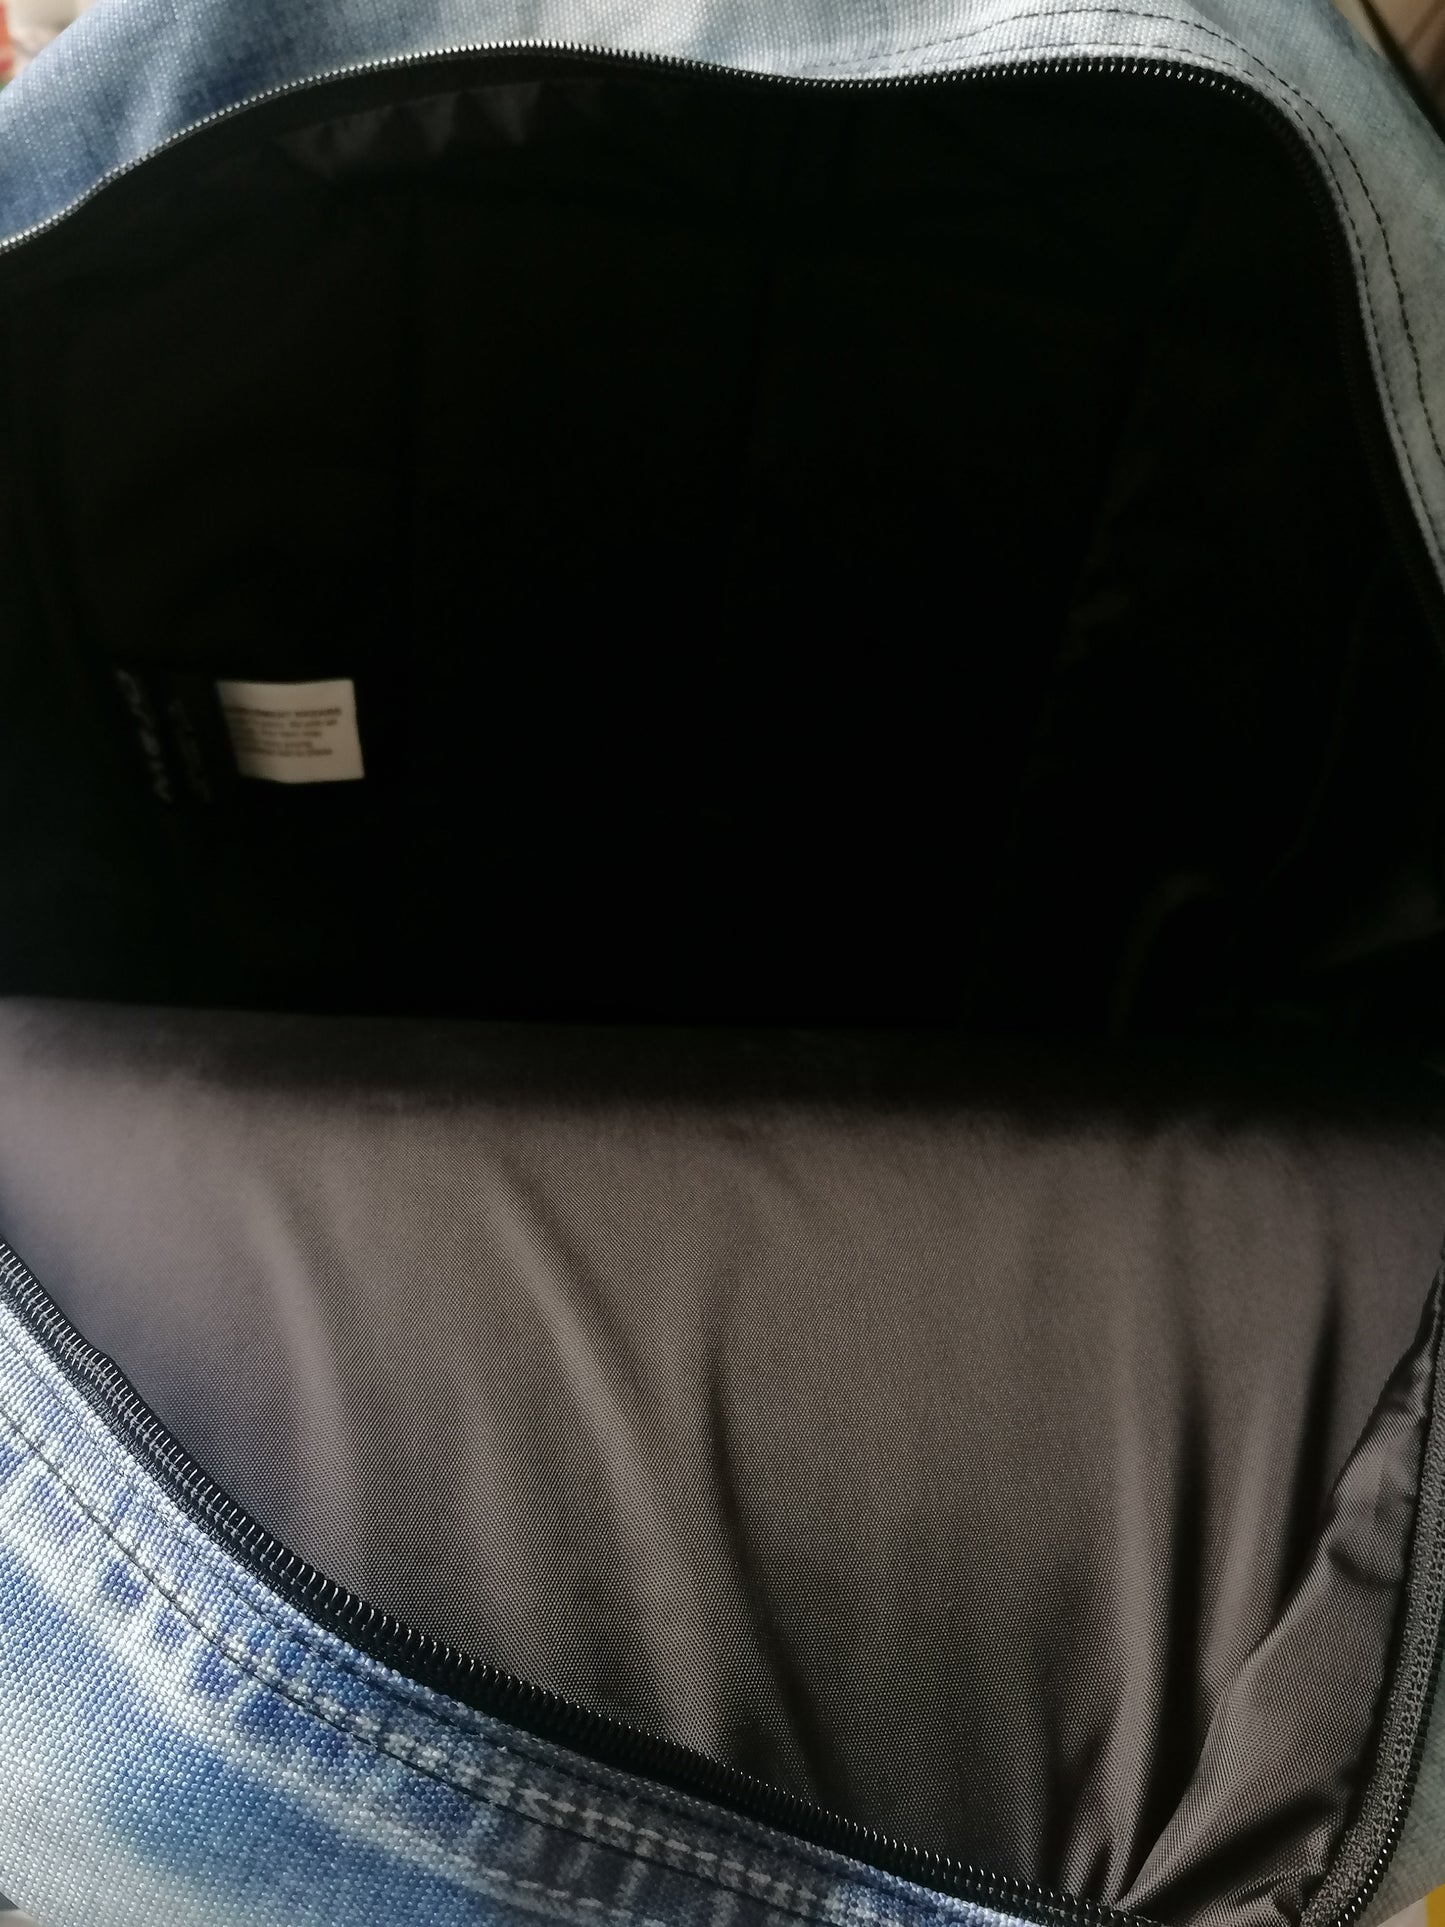 Mochilas de mojo mochilas. Los jeans azules se ven impresos. Algunos bolsillos internos.